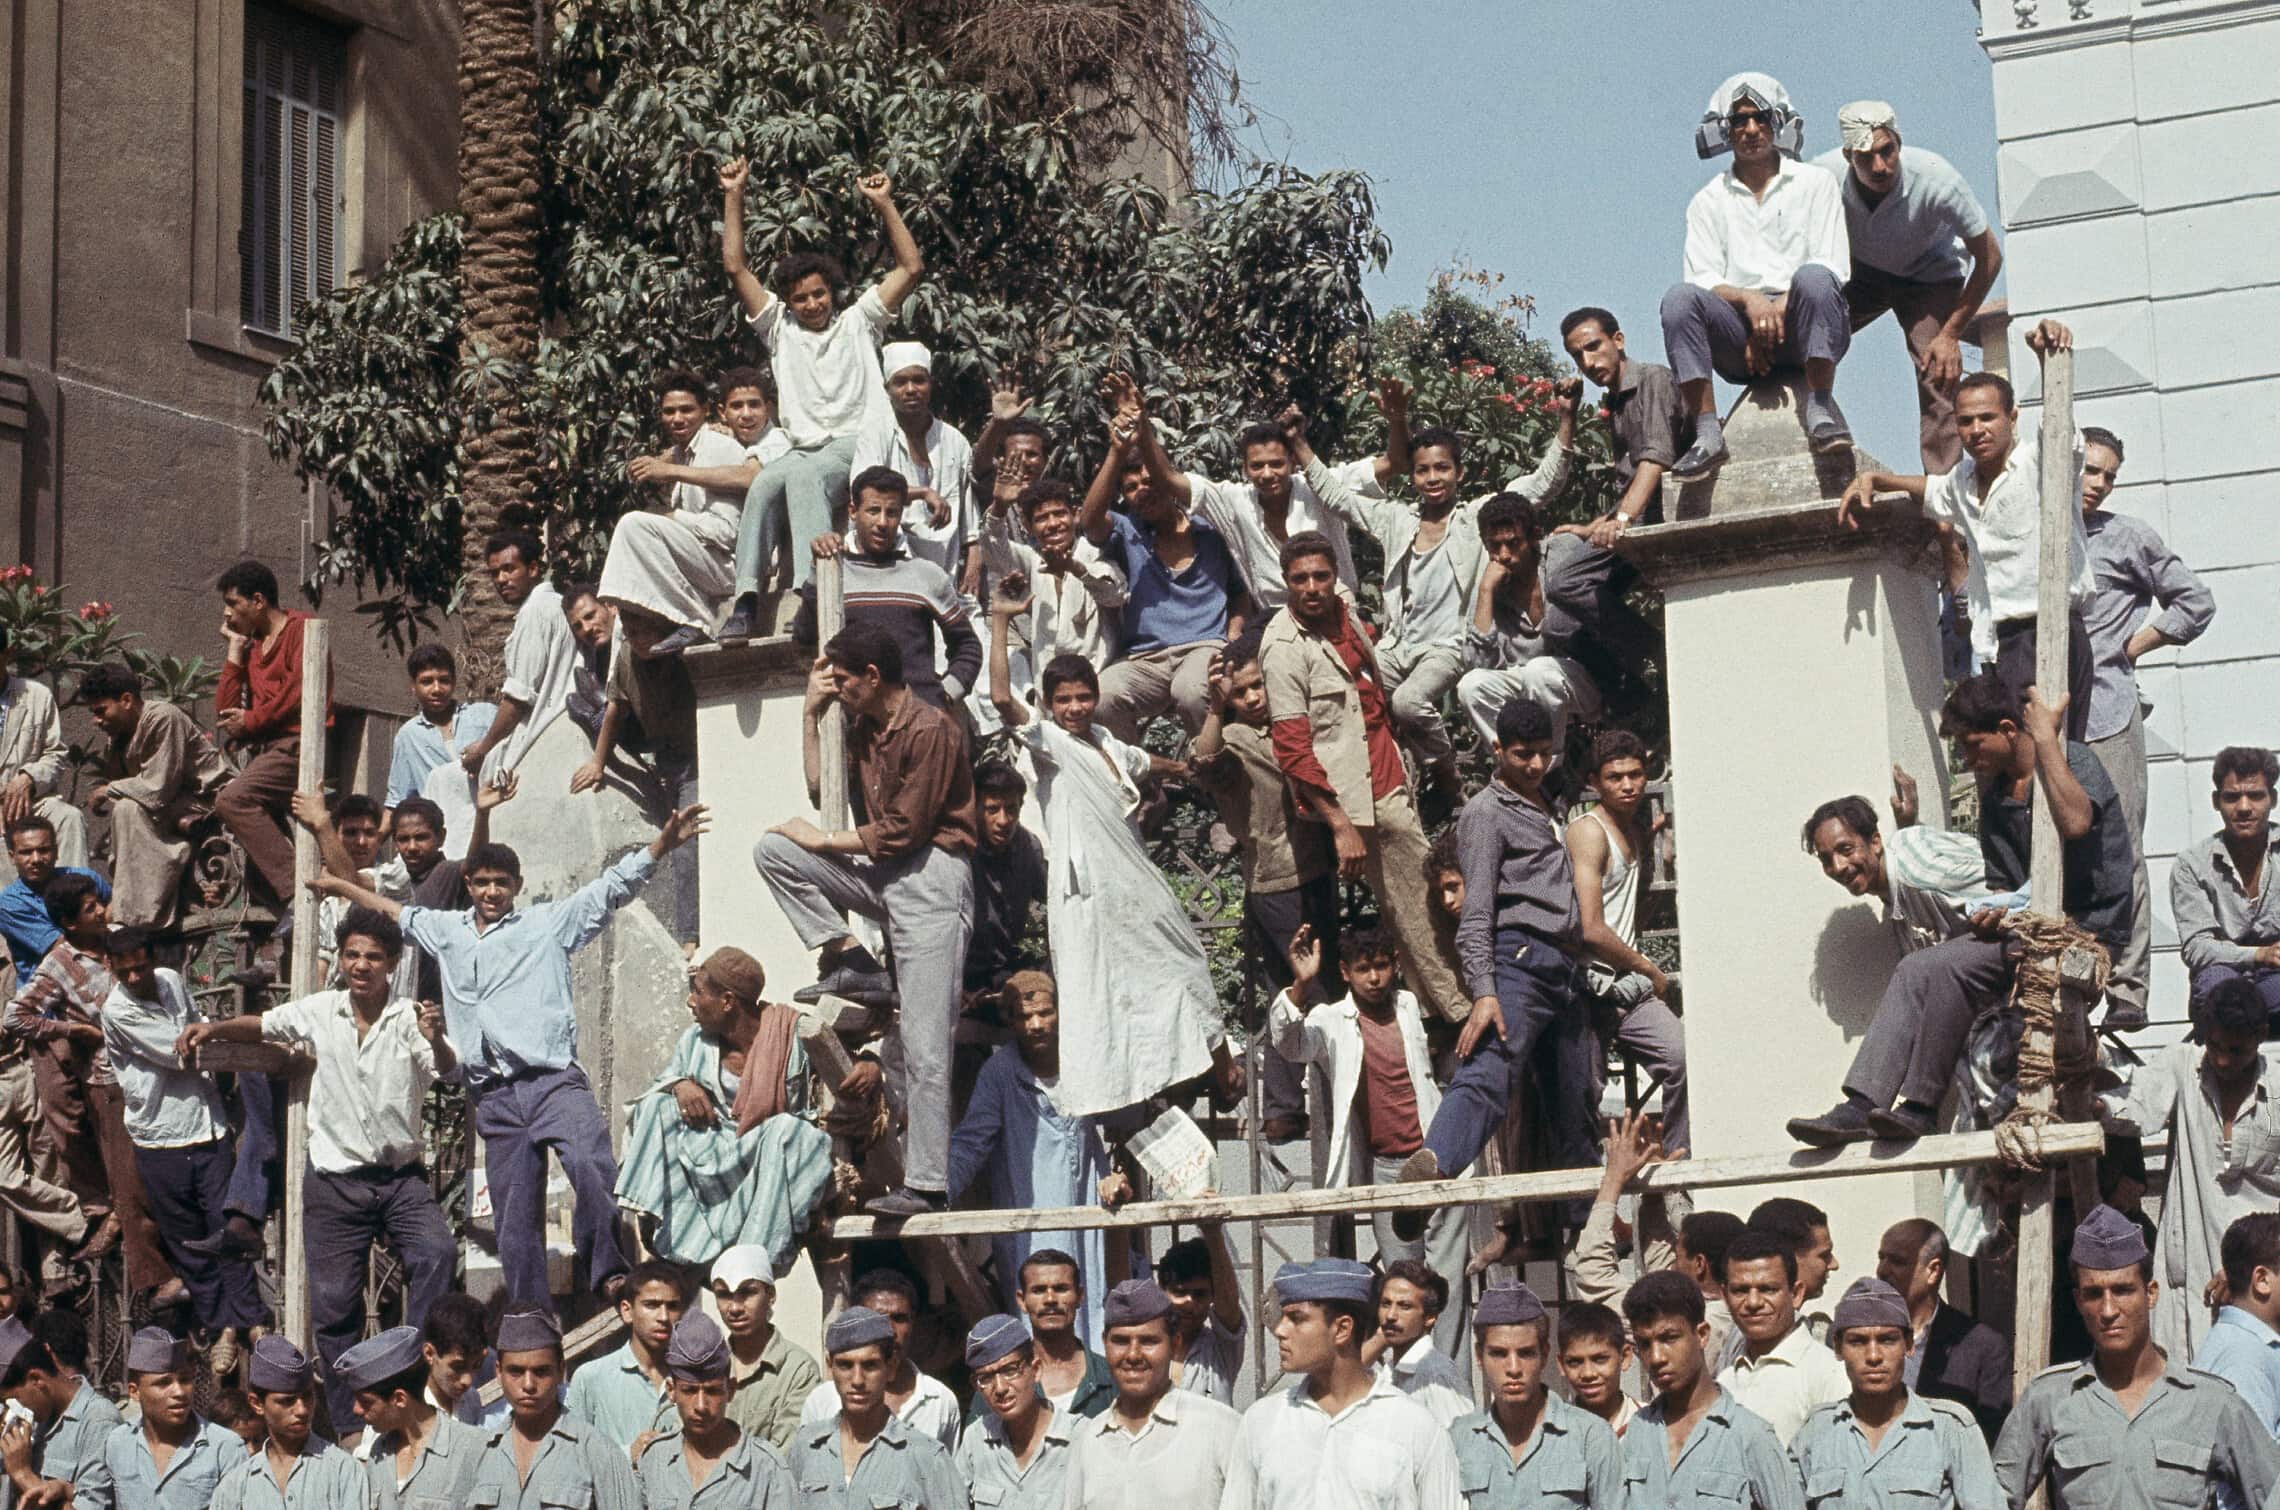 מפגינים מצרים יוצאים לרחובות קהיר במהלך מלחמת ששת הימים,  ב-10 ביוני 1967 (צילום: AP Photo/Brian Calvert)